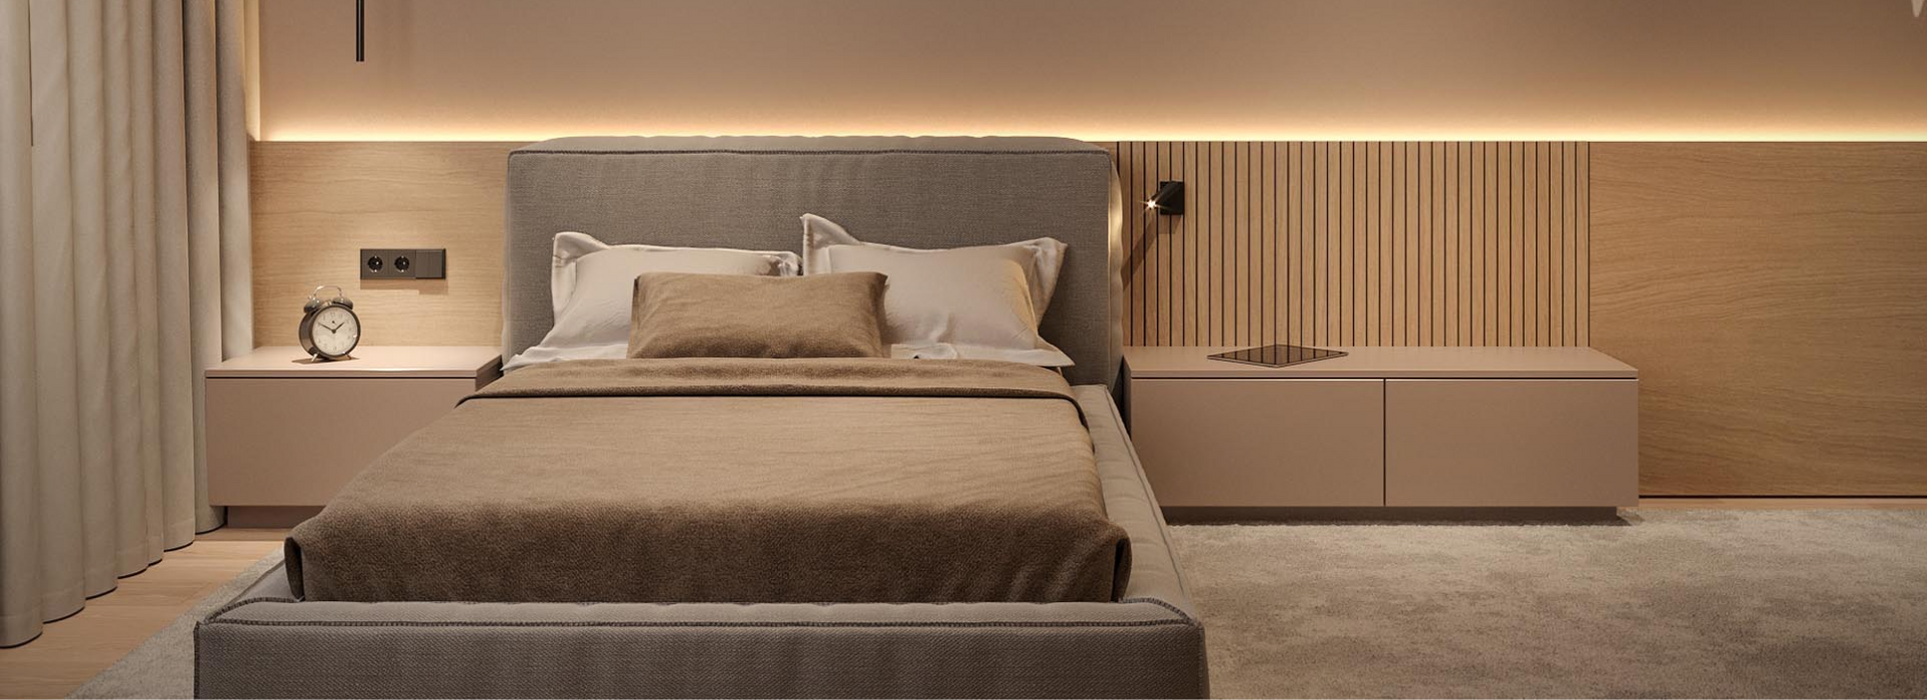 Best Led Lights For Bedroom To Create A Modern Bedroom Set